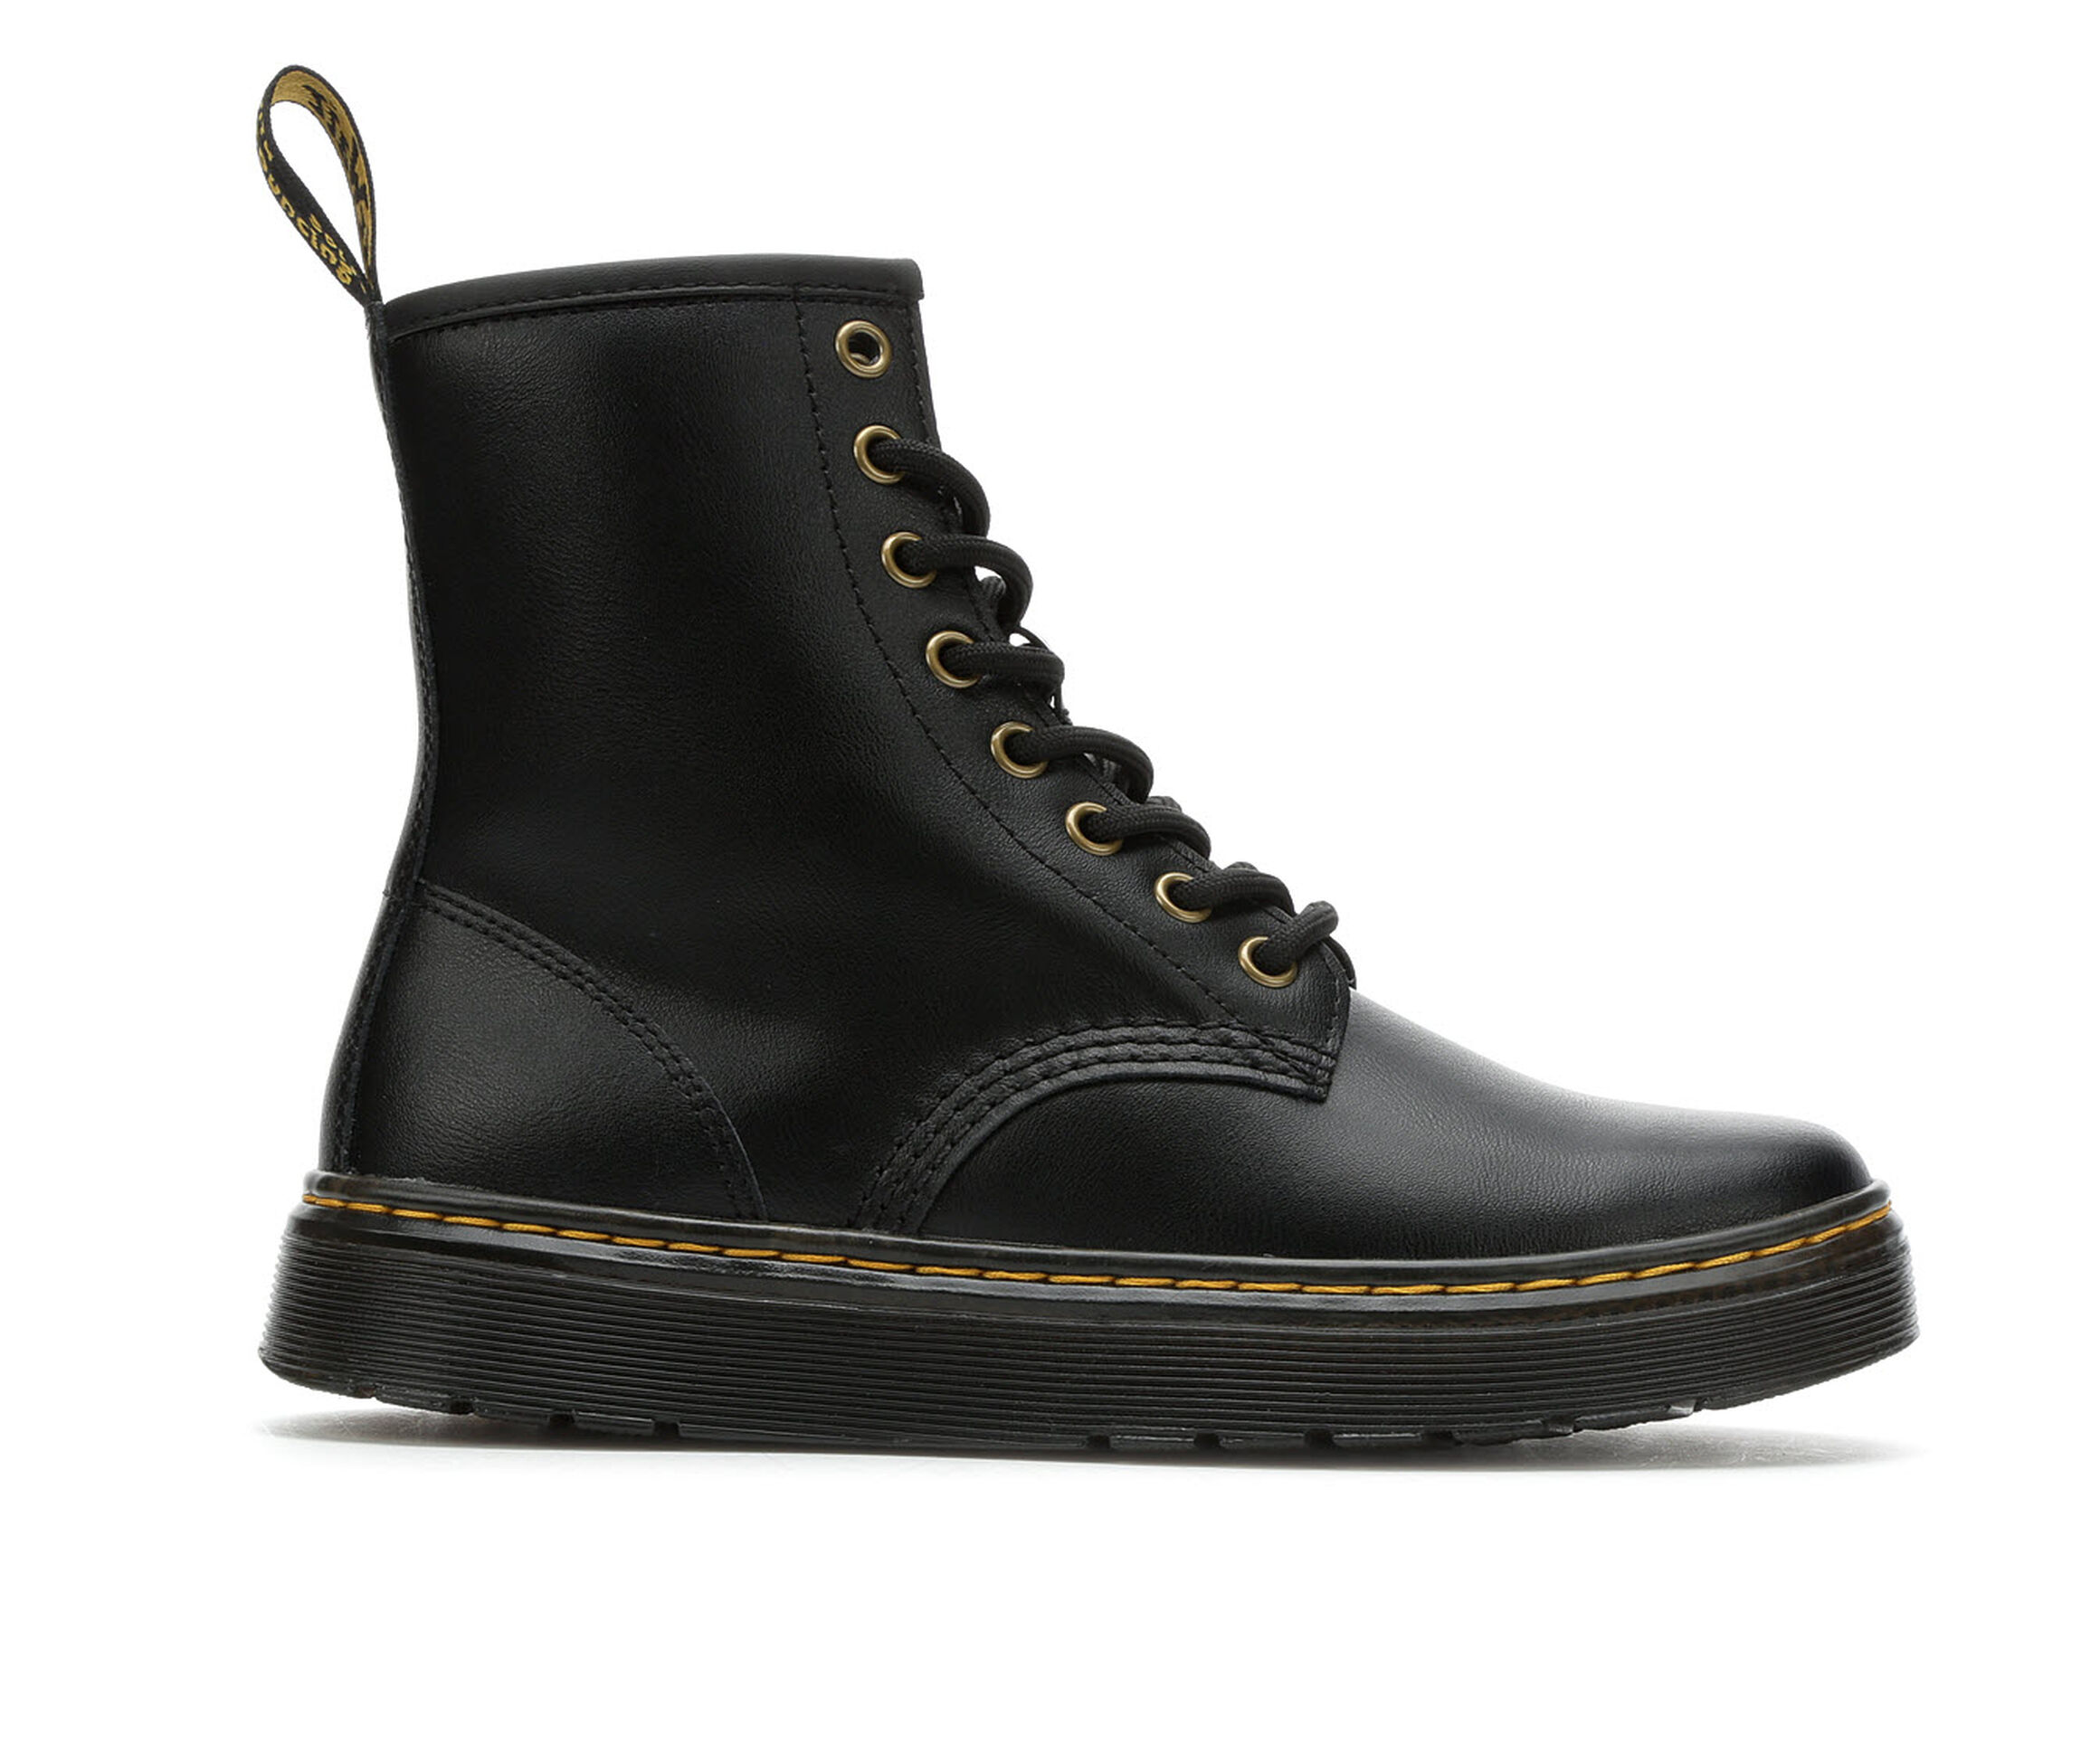 Doc Martens Boots & Shoes | Shoe Carnival